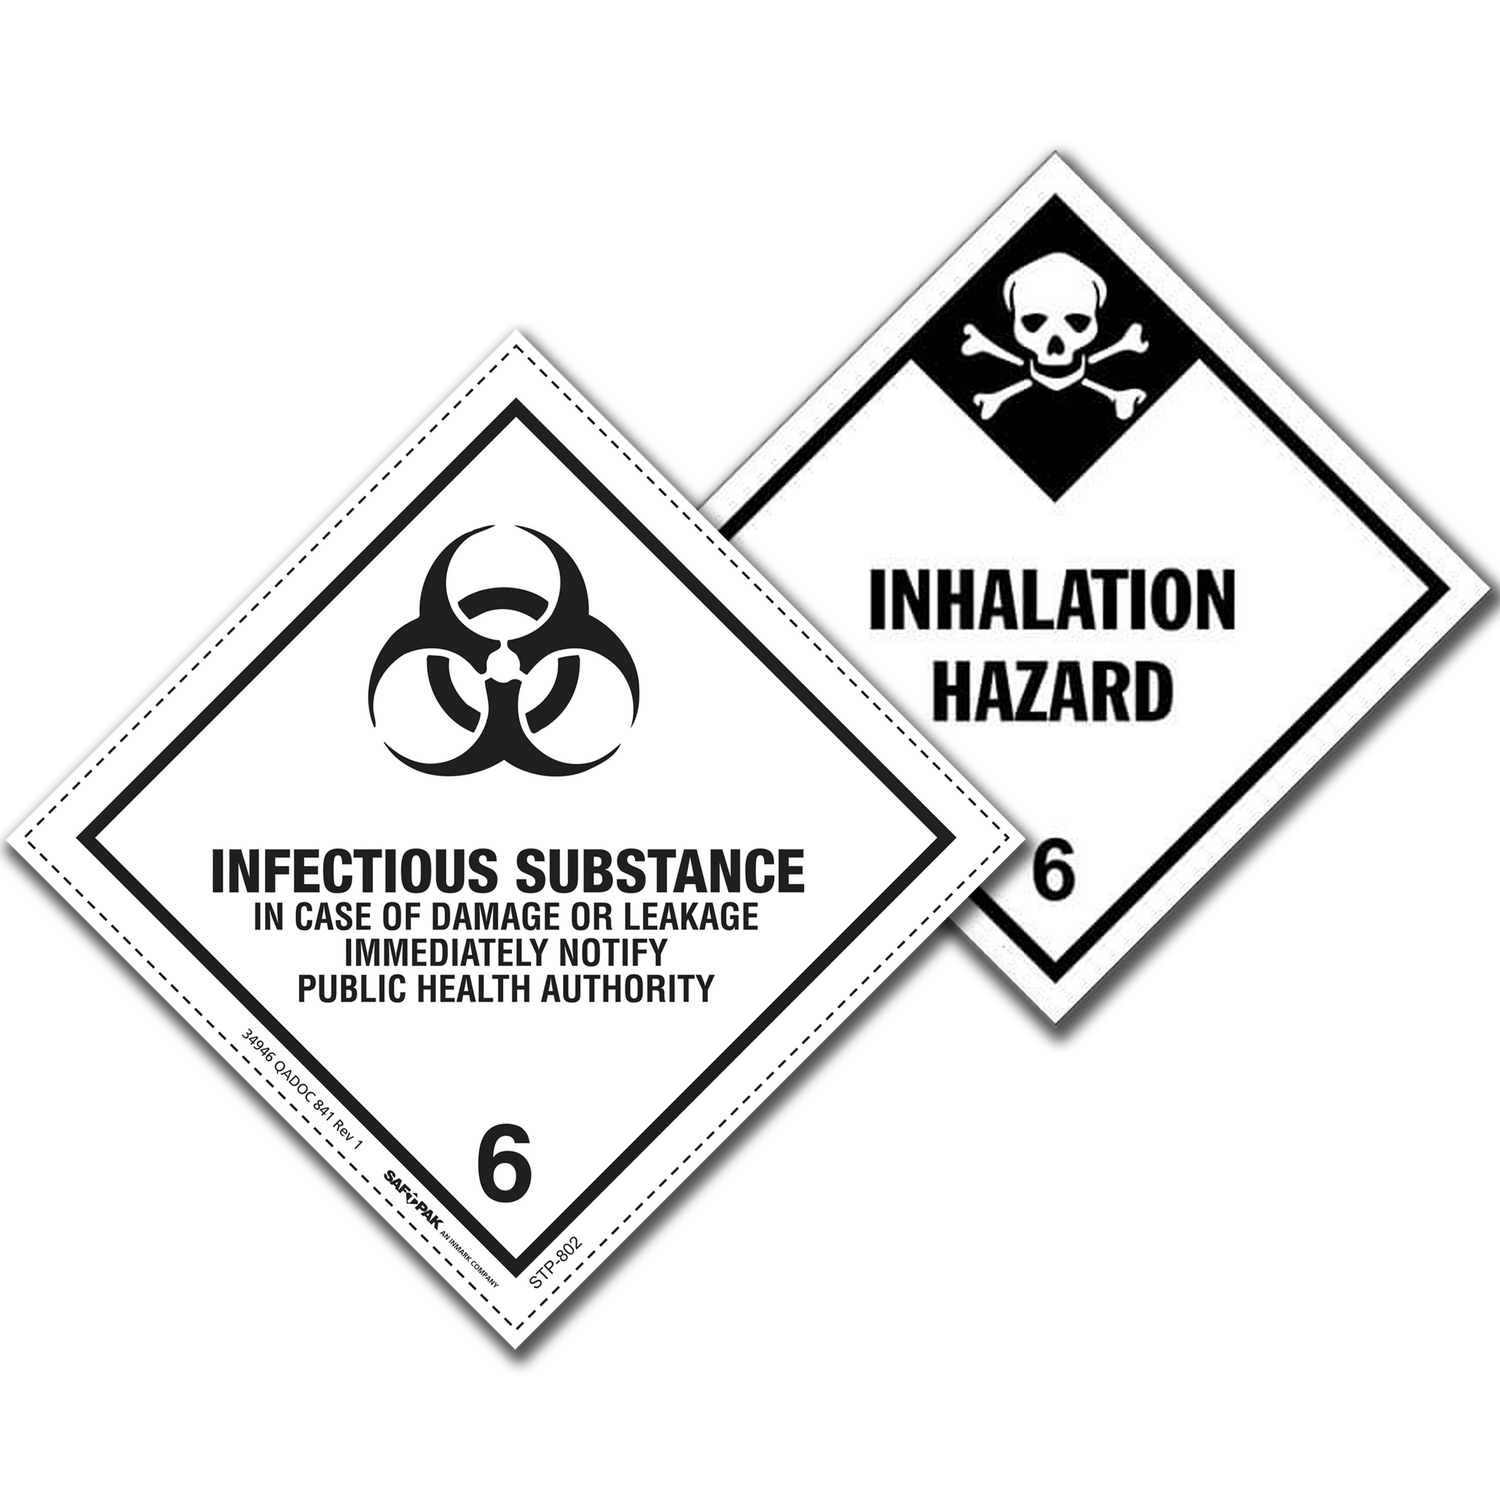 Class 6 - Toxic substances, UN Dangerous Goods